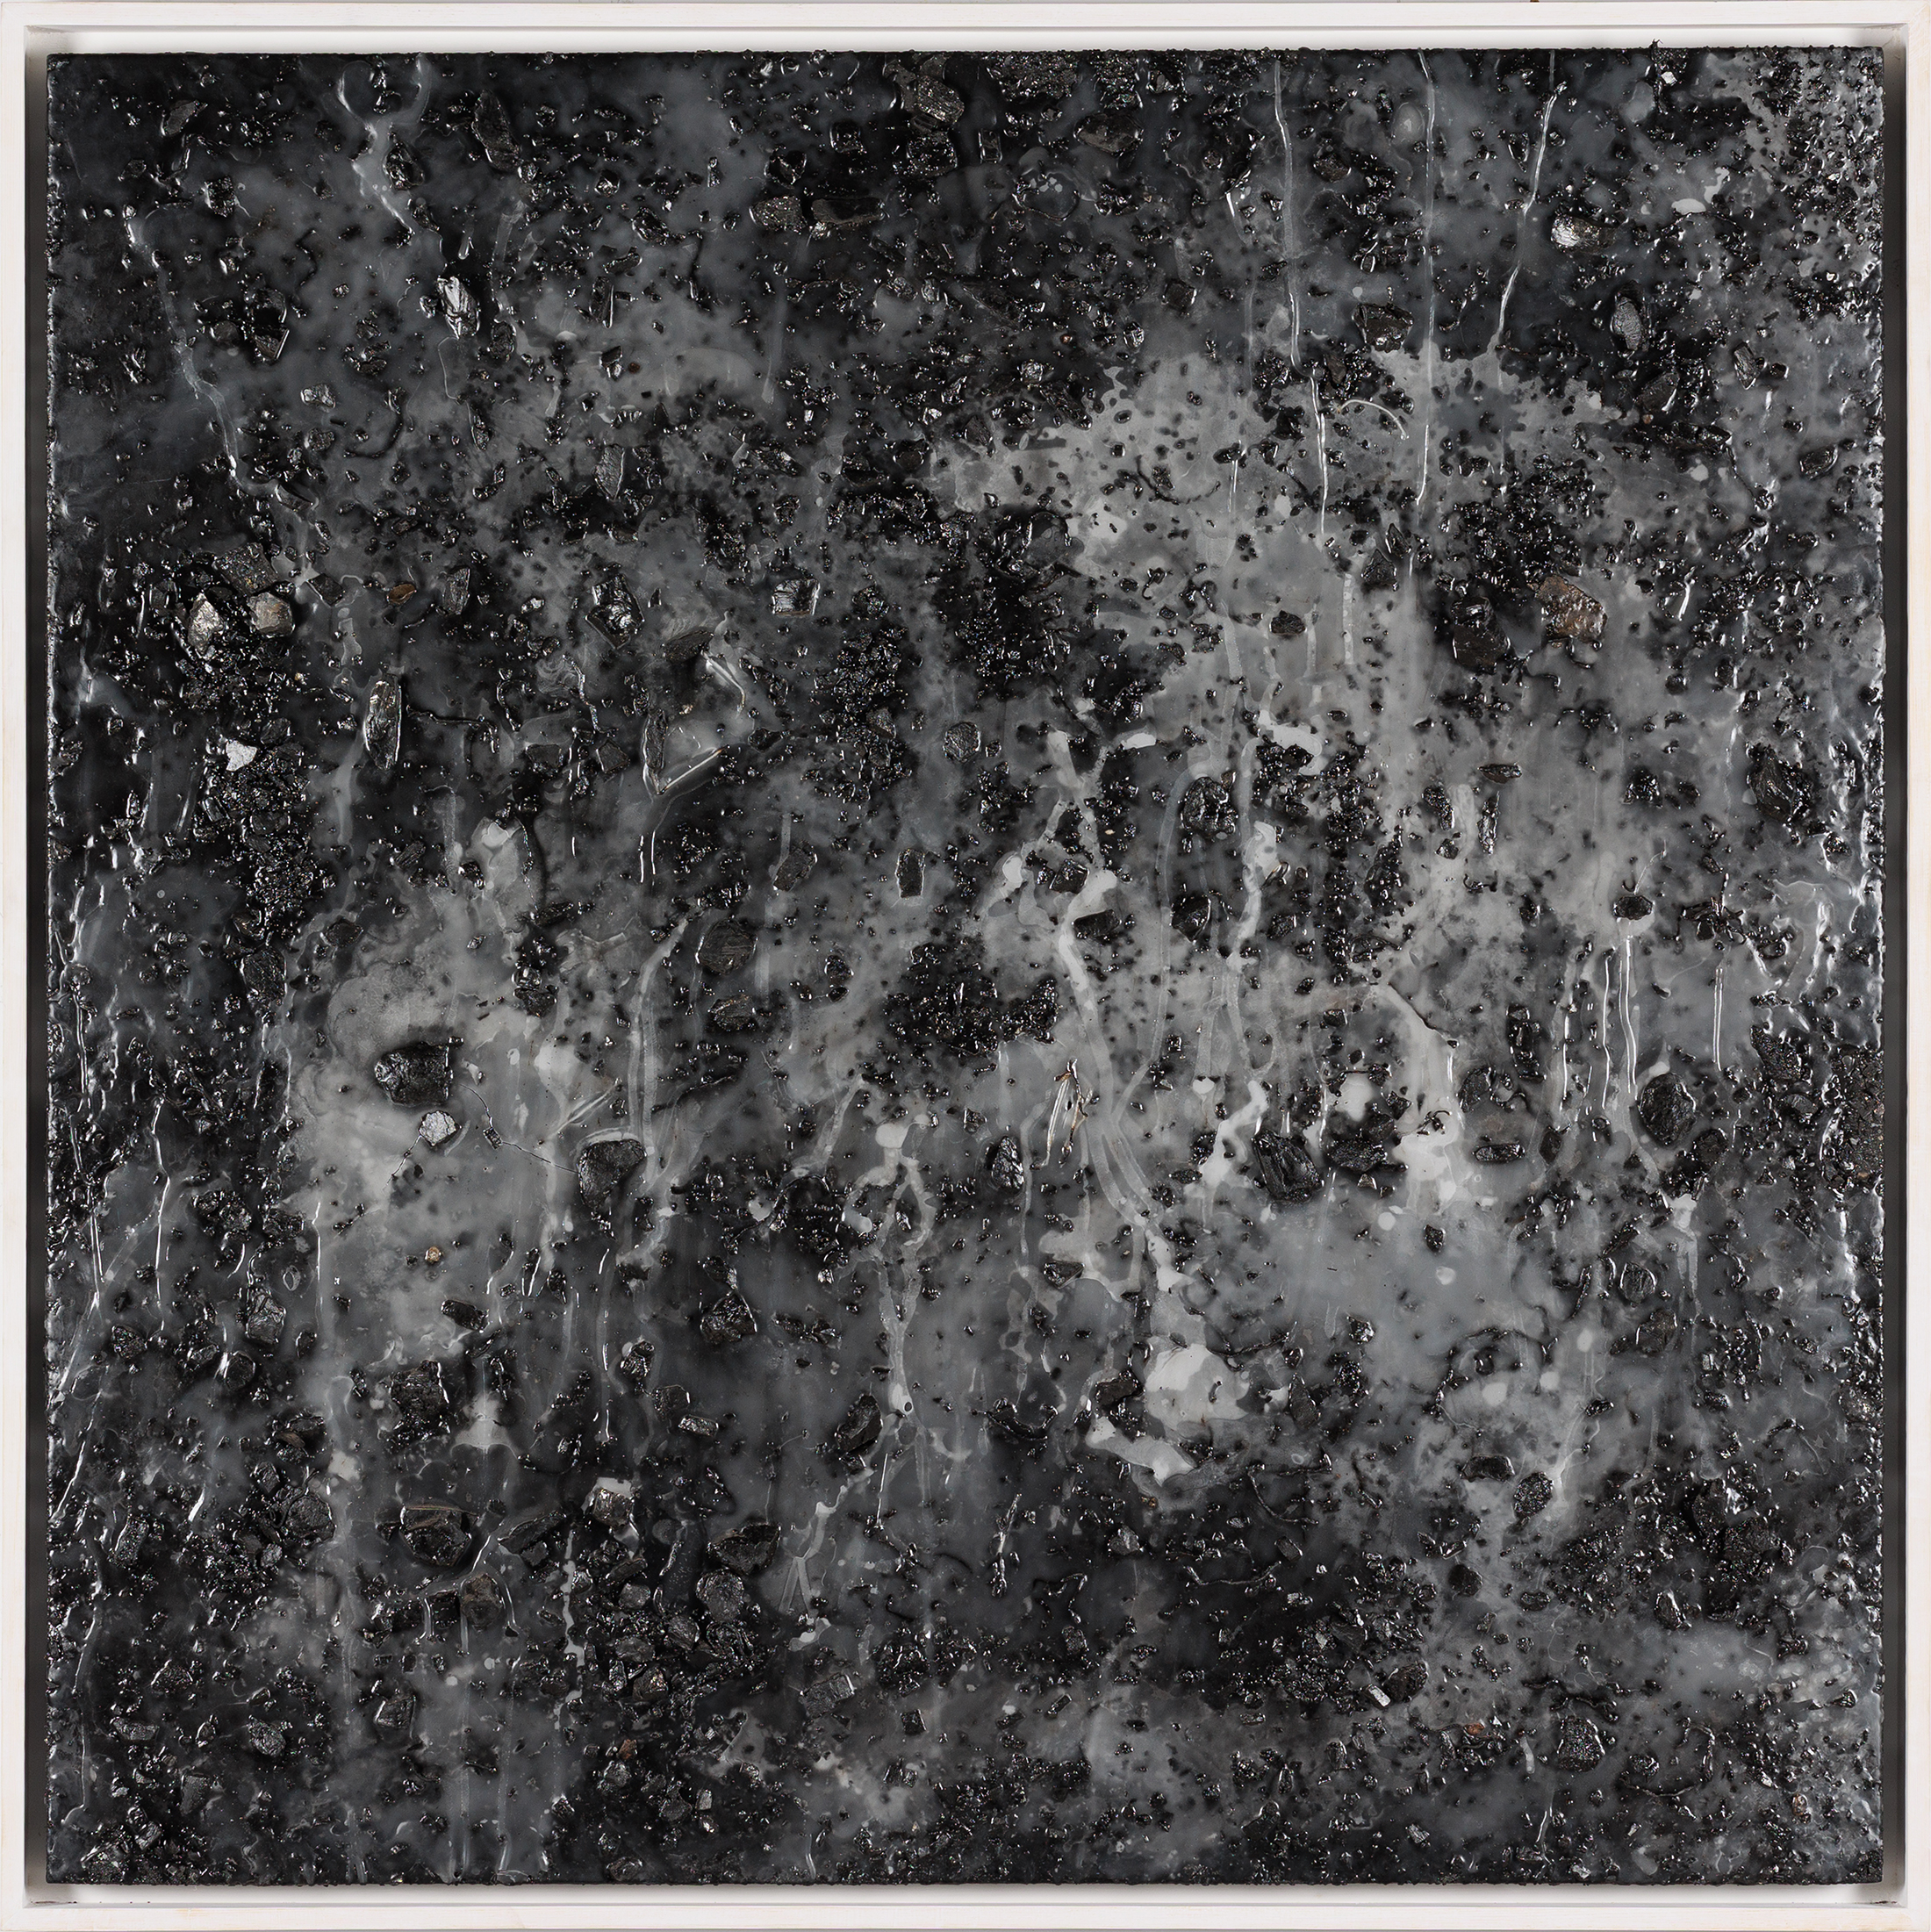 LUMIÈRE NOIRE I, 2022
Technique mixte Résine, charbon et cire sur toile marouflée sur panneau
Signée au dos 
150 x 150 cm